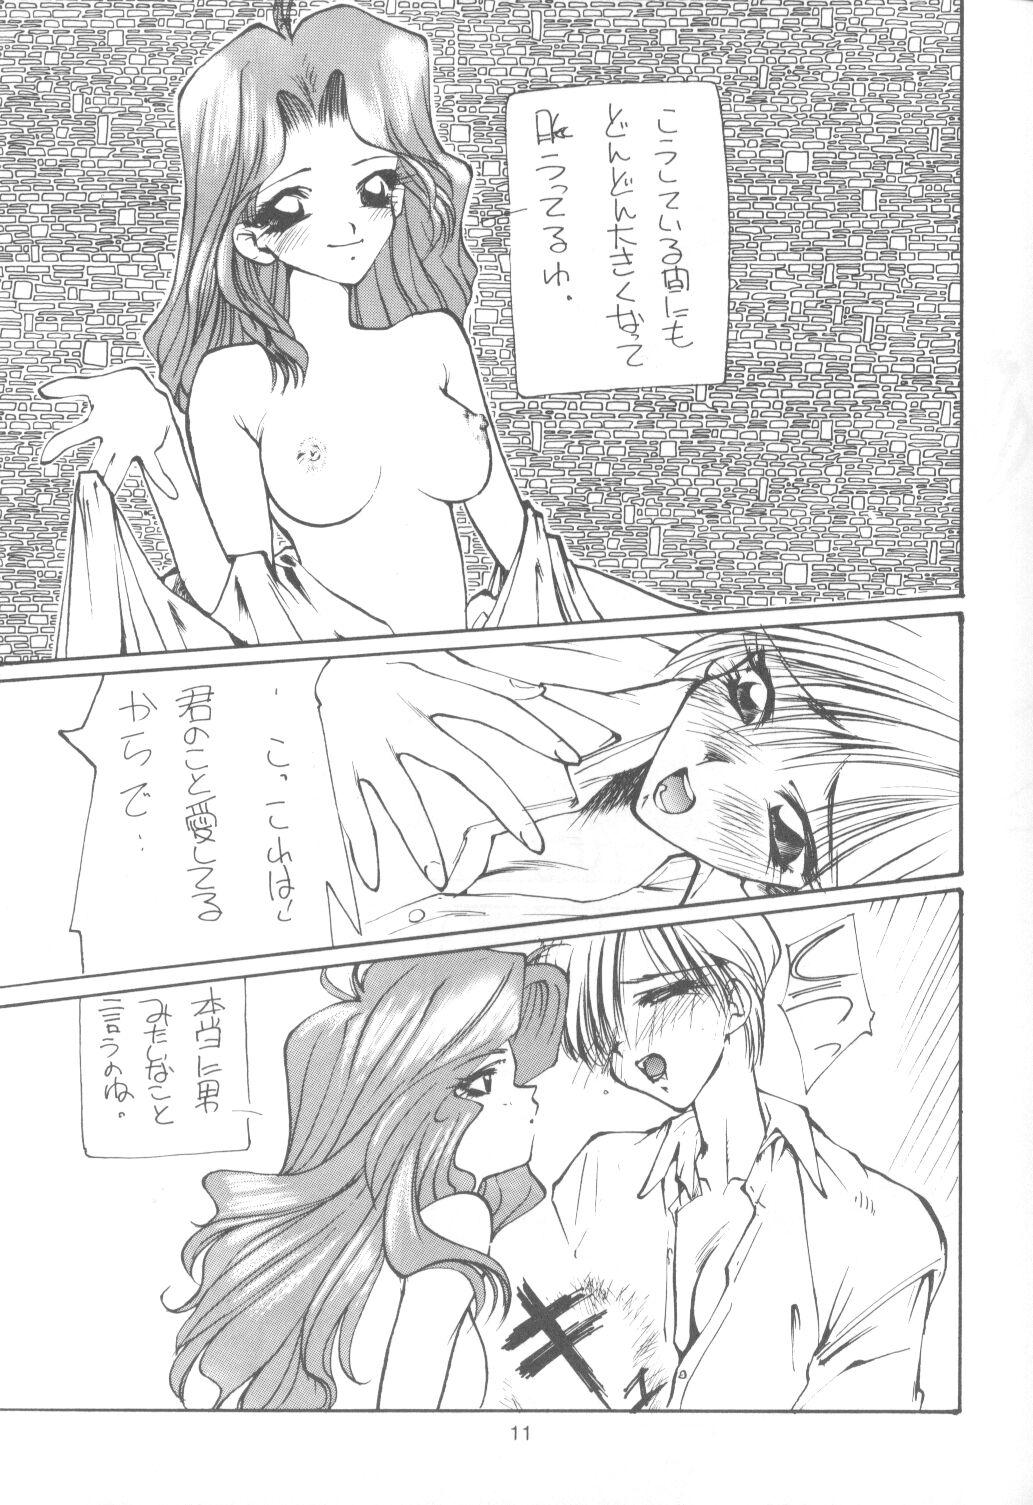 Bed Tabeta Kigasuru 9 - Sailor moon Culonas - Page 10